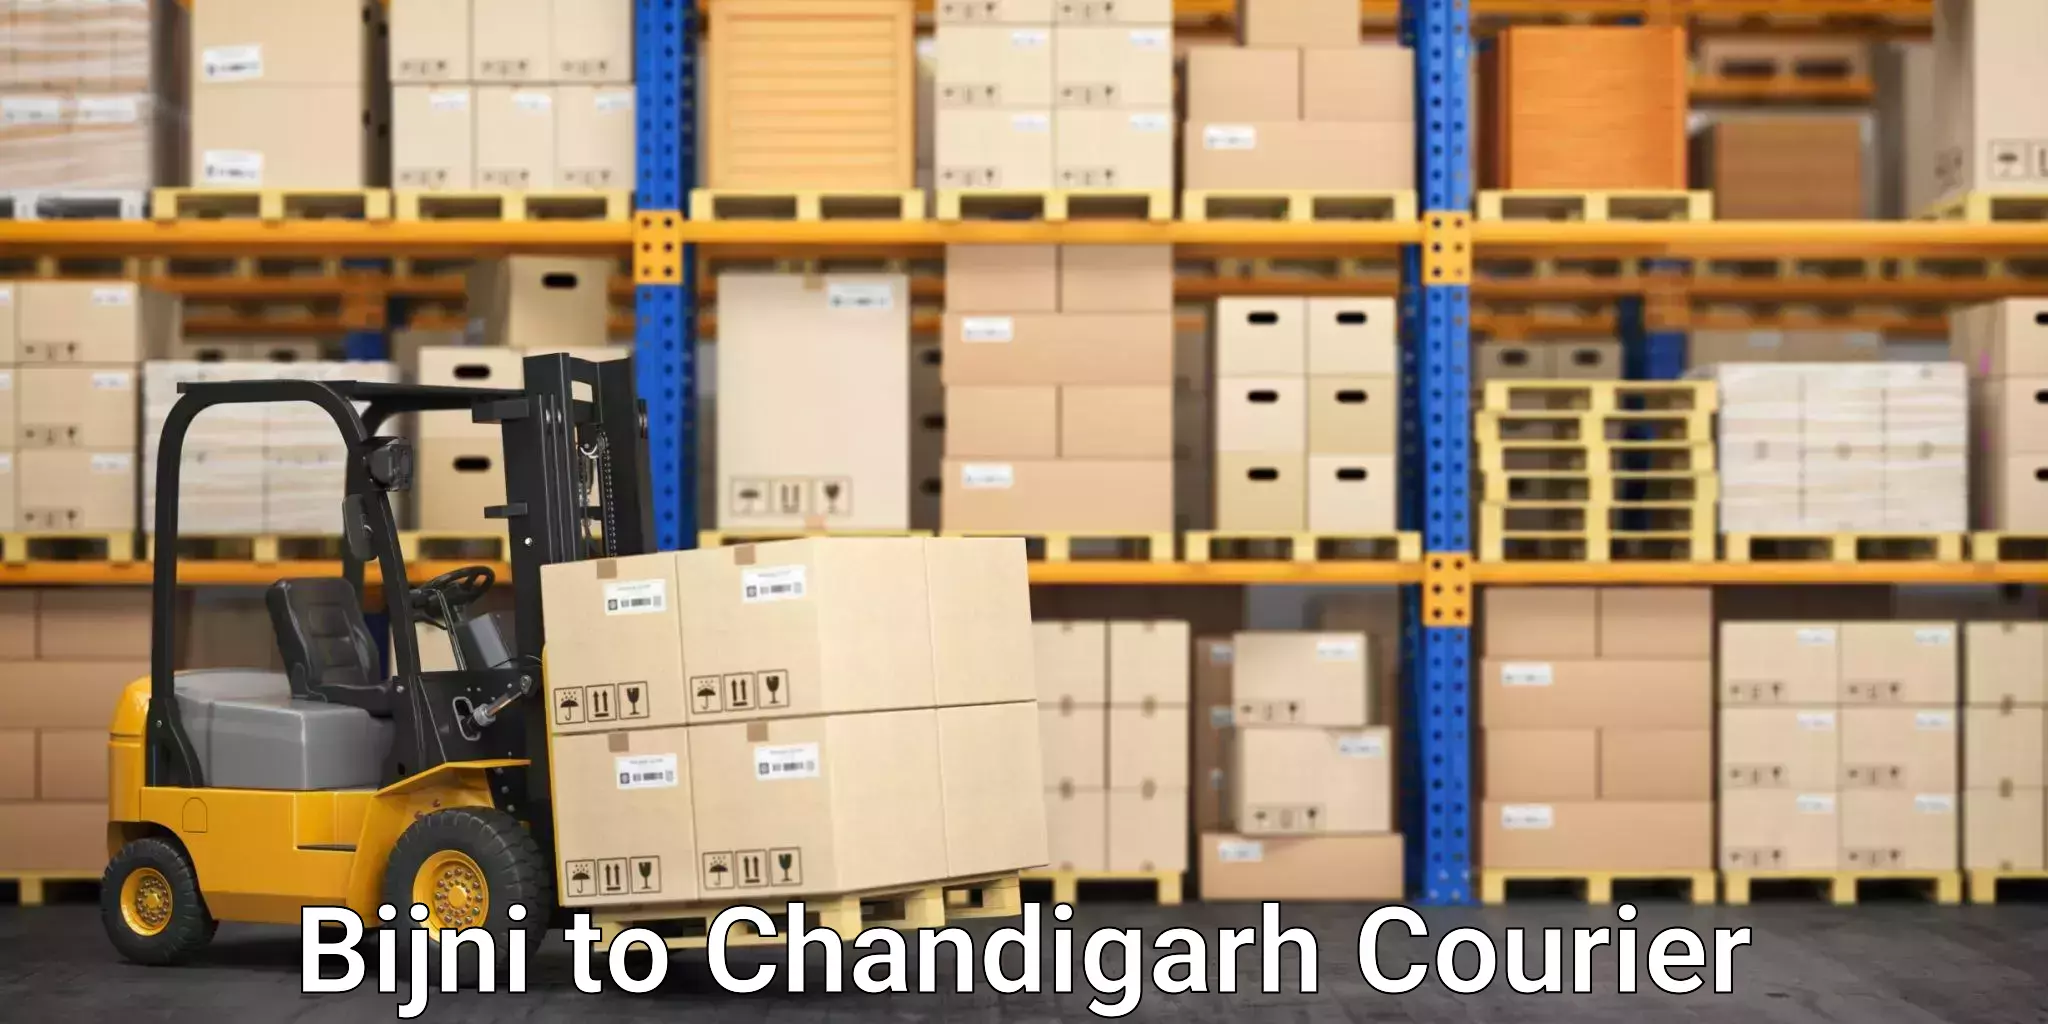 Expedited shipping methods Bijni to Chandigarh